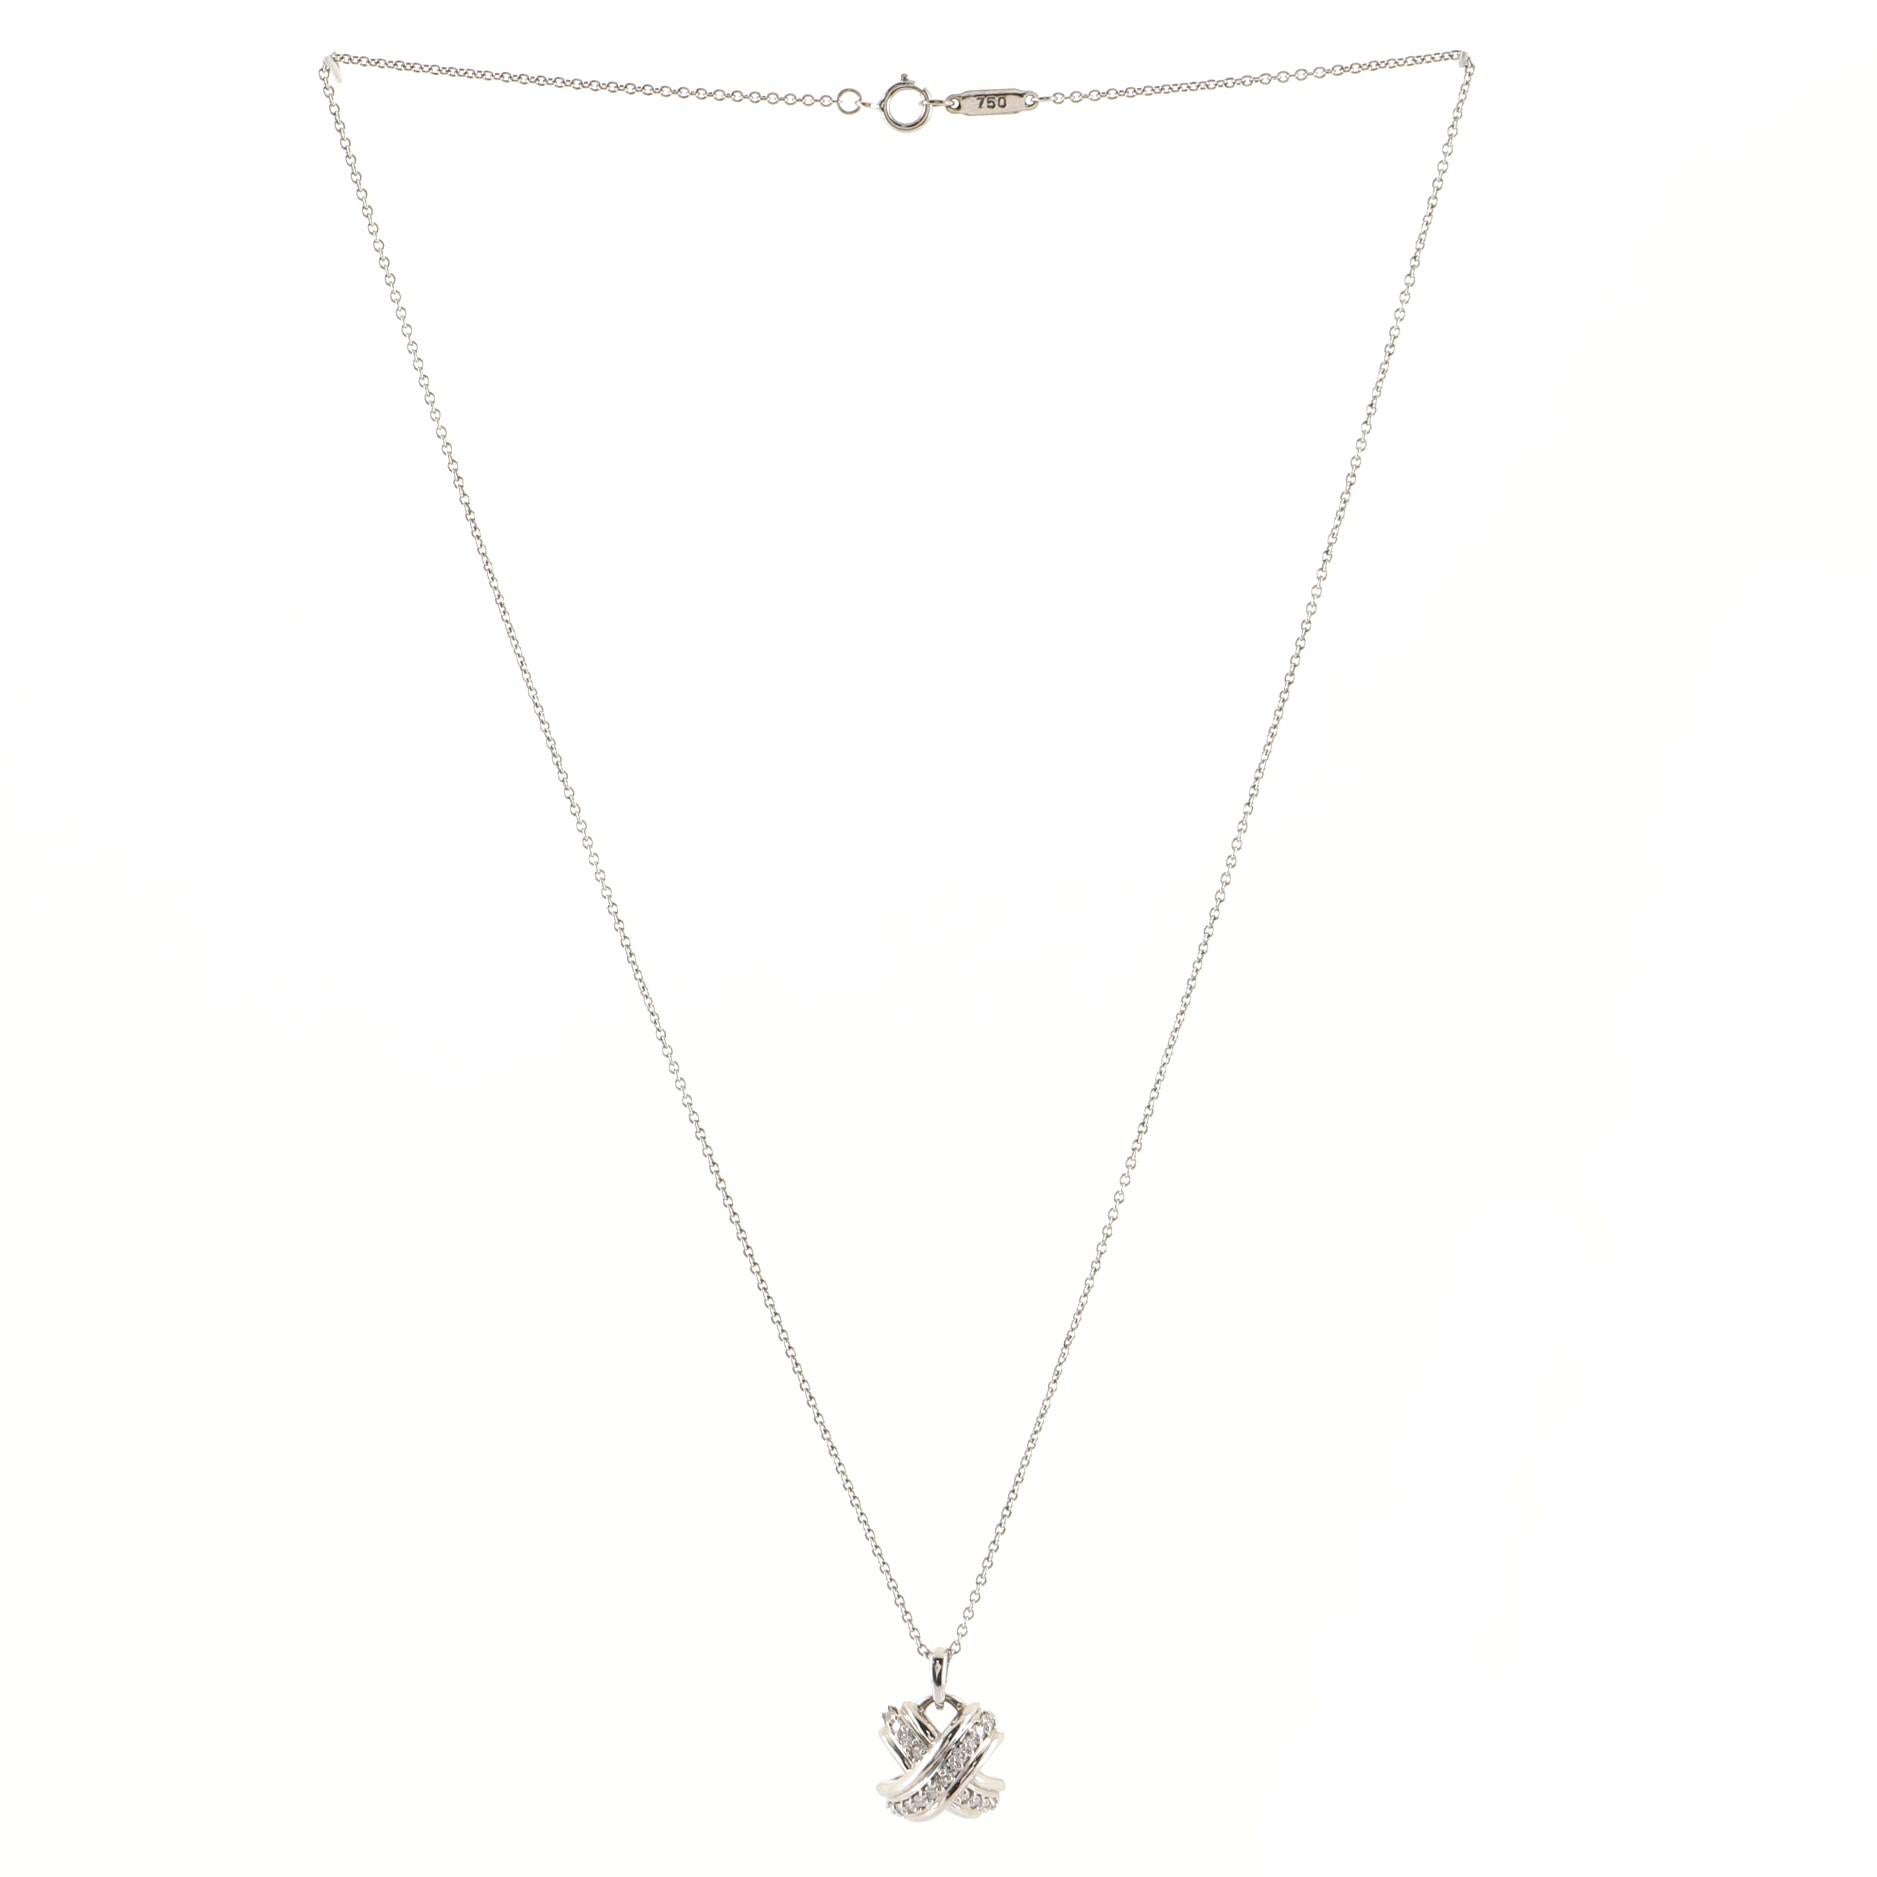 tiffany x necklace with diamonds